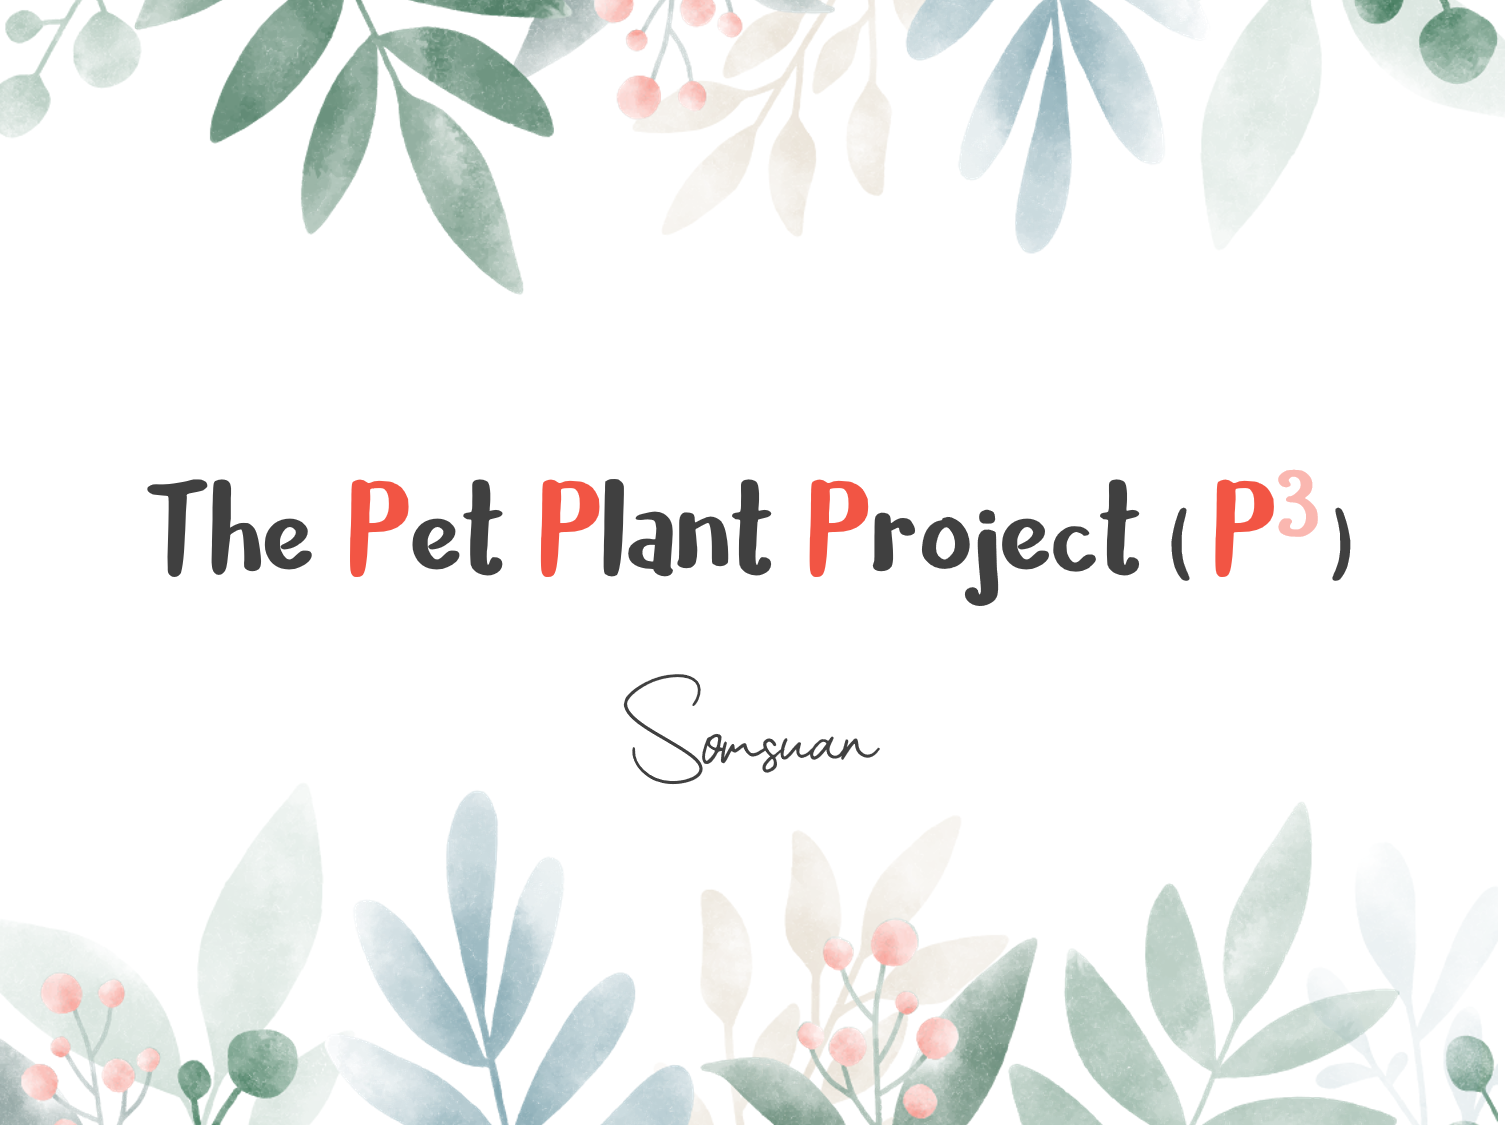 ภาพประกอบไอเดีย The Pet Plant Project เรามาเลี้ยงพืชกันเถอะ